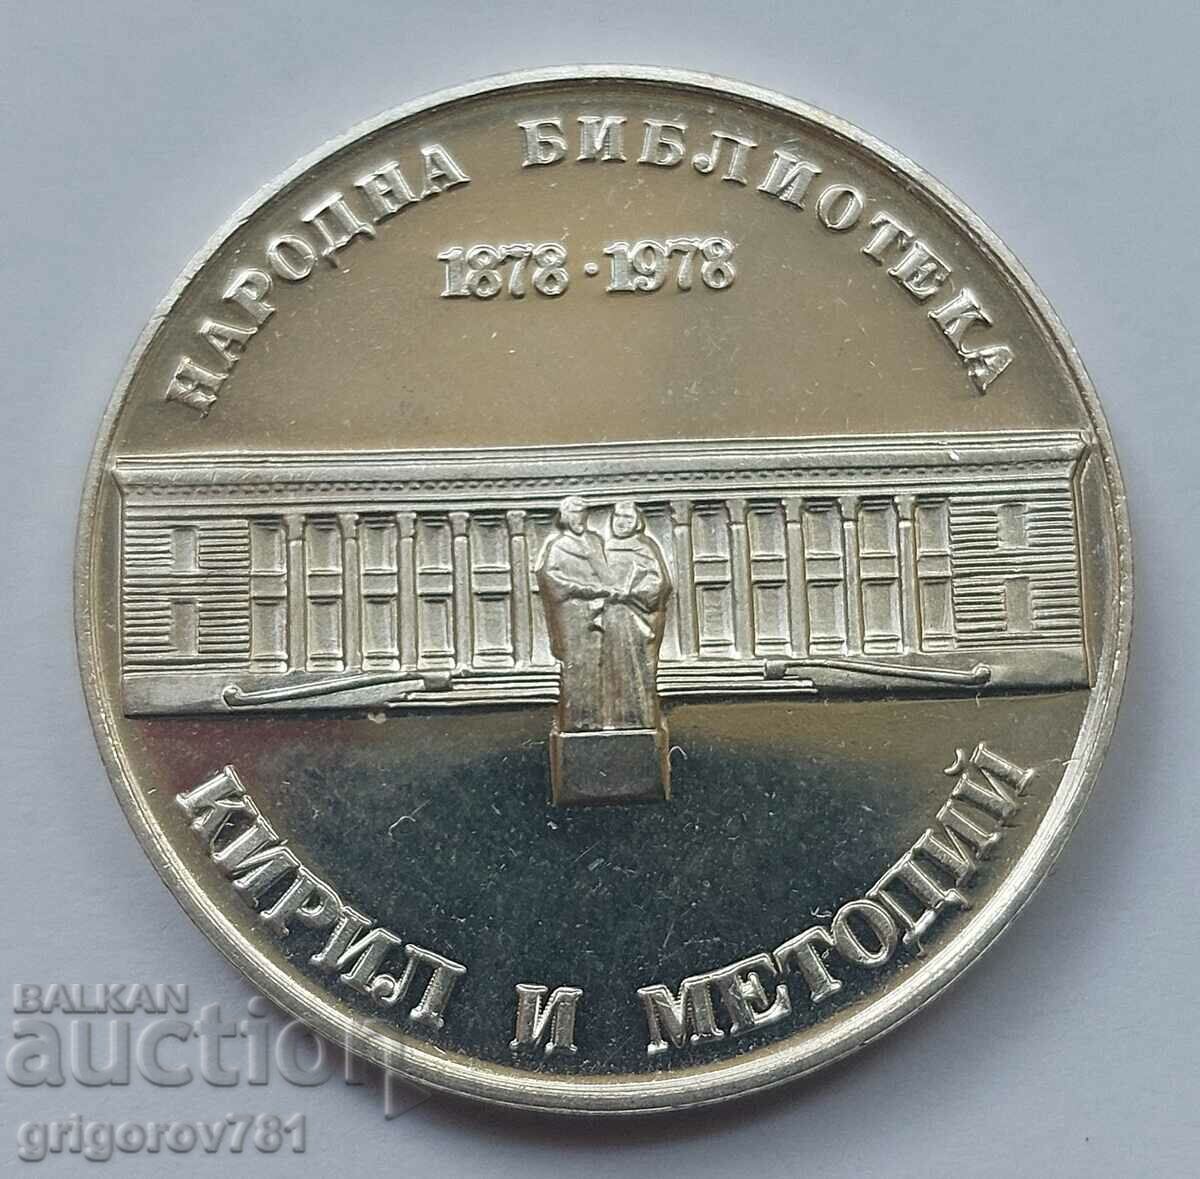 5 leva silver 1978 National Library - silver coin